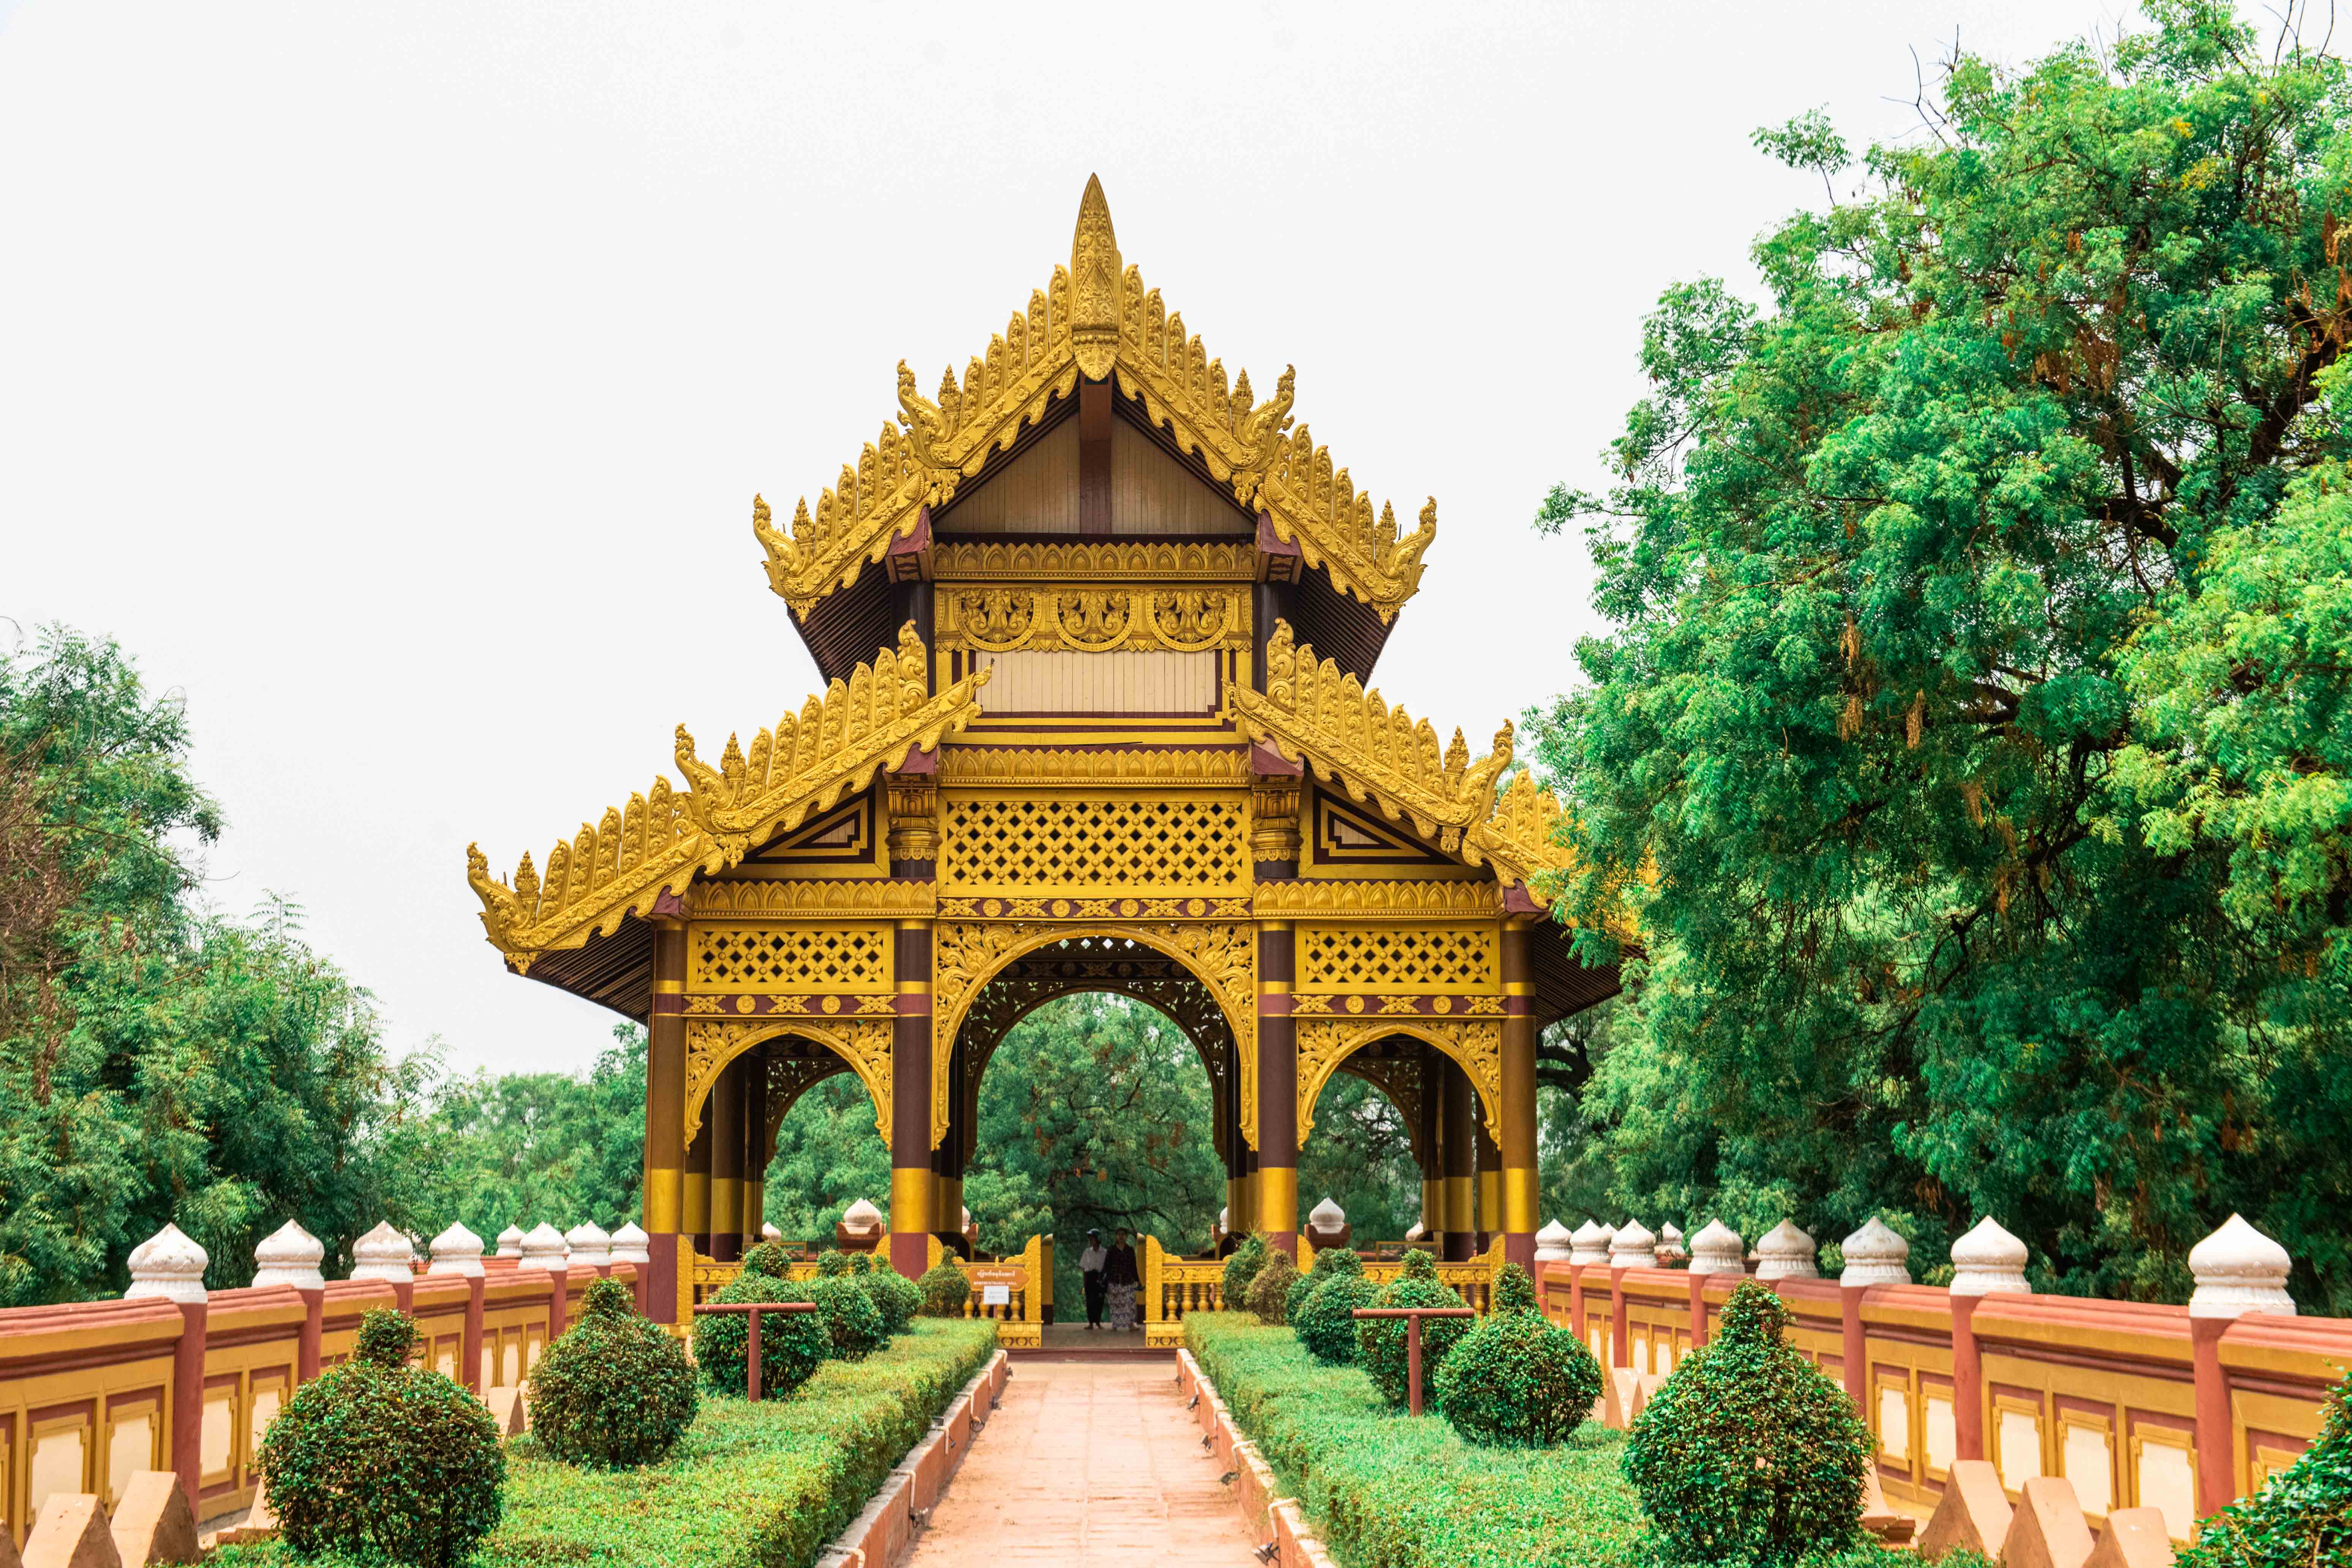 原创缅甸唯一收门票的景区,建筑超级奢华,来过的游客都表示很美!